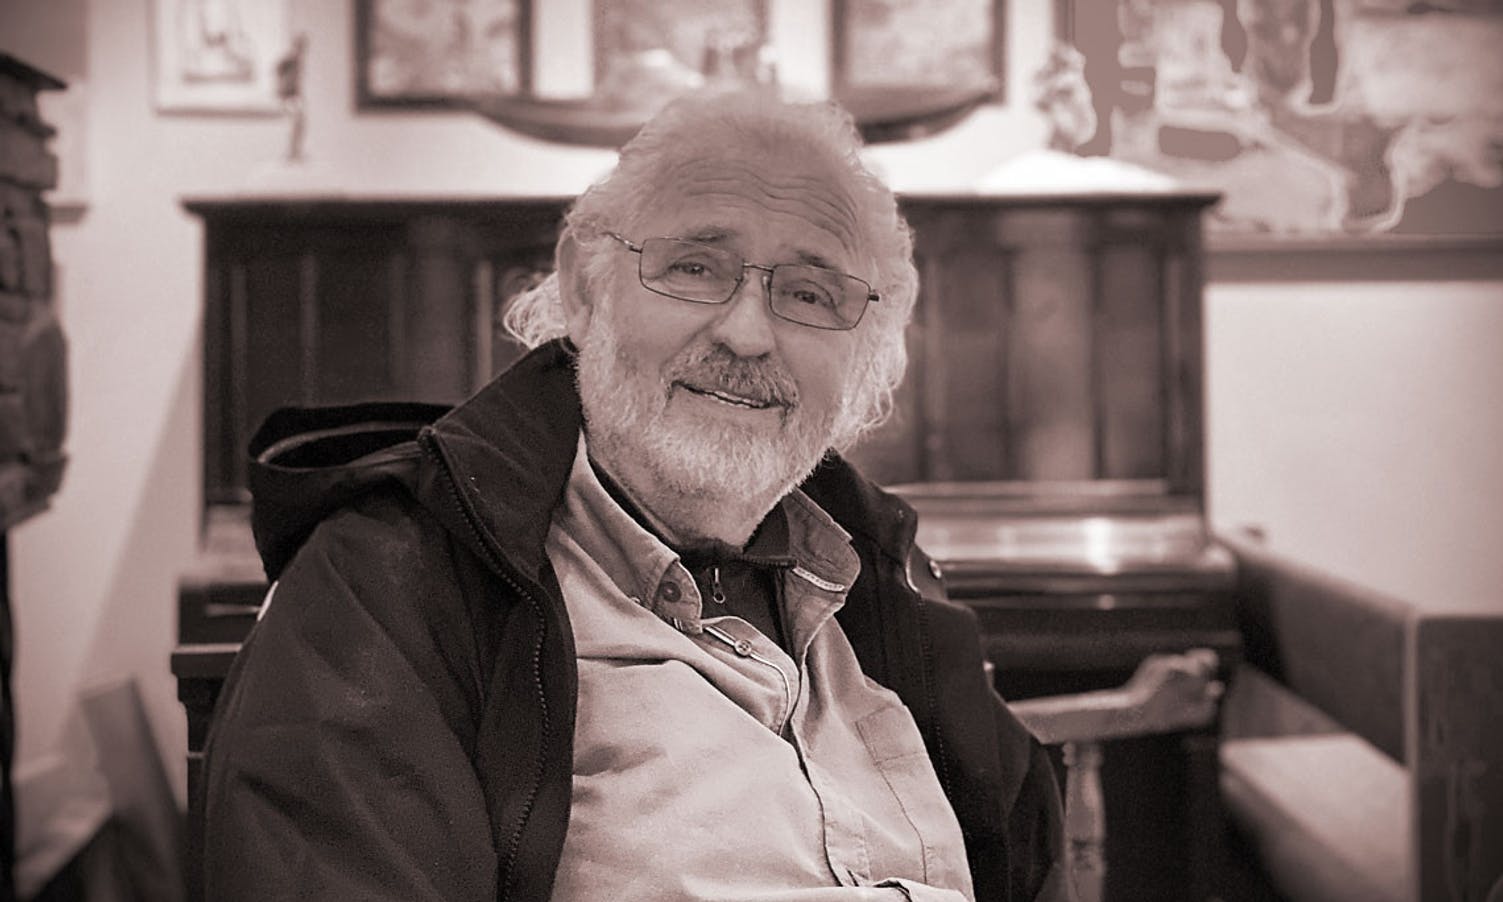 Livet, leiken og røynda: Arne Mæland fyller 70 år i dag